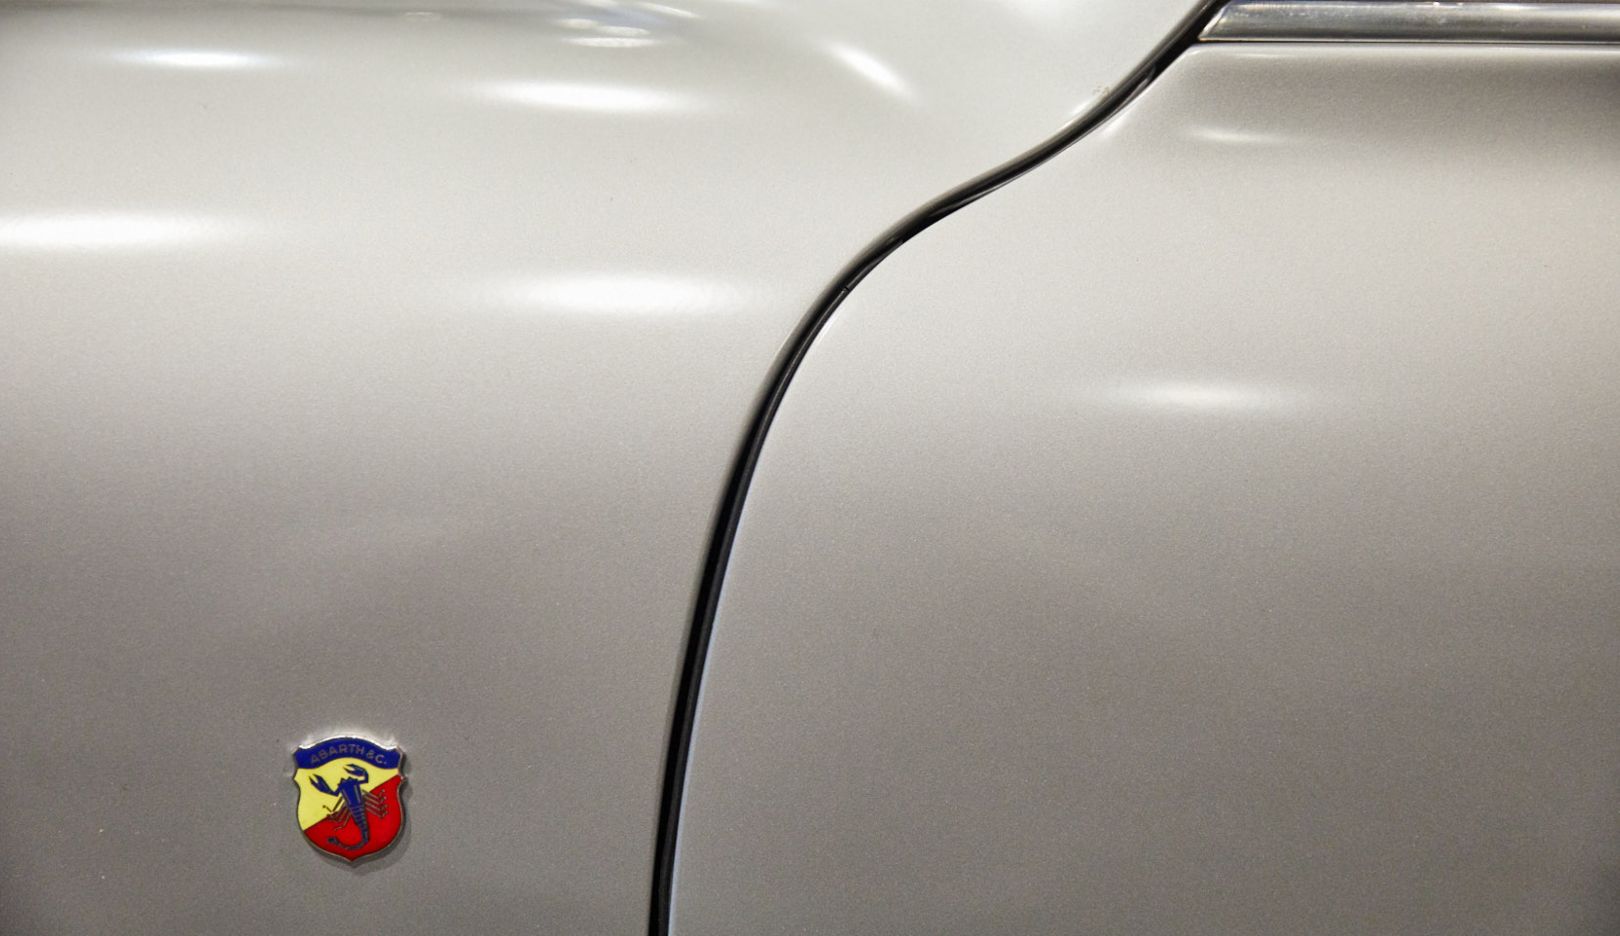 Der italienisch-österreichische Sportwagenbauer Carlo Abarth wirkte beim Bau des Rennwagens mit. Sein Wappen prangt an der Aluminiumkarosserie.